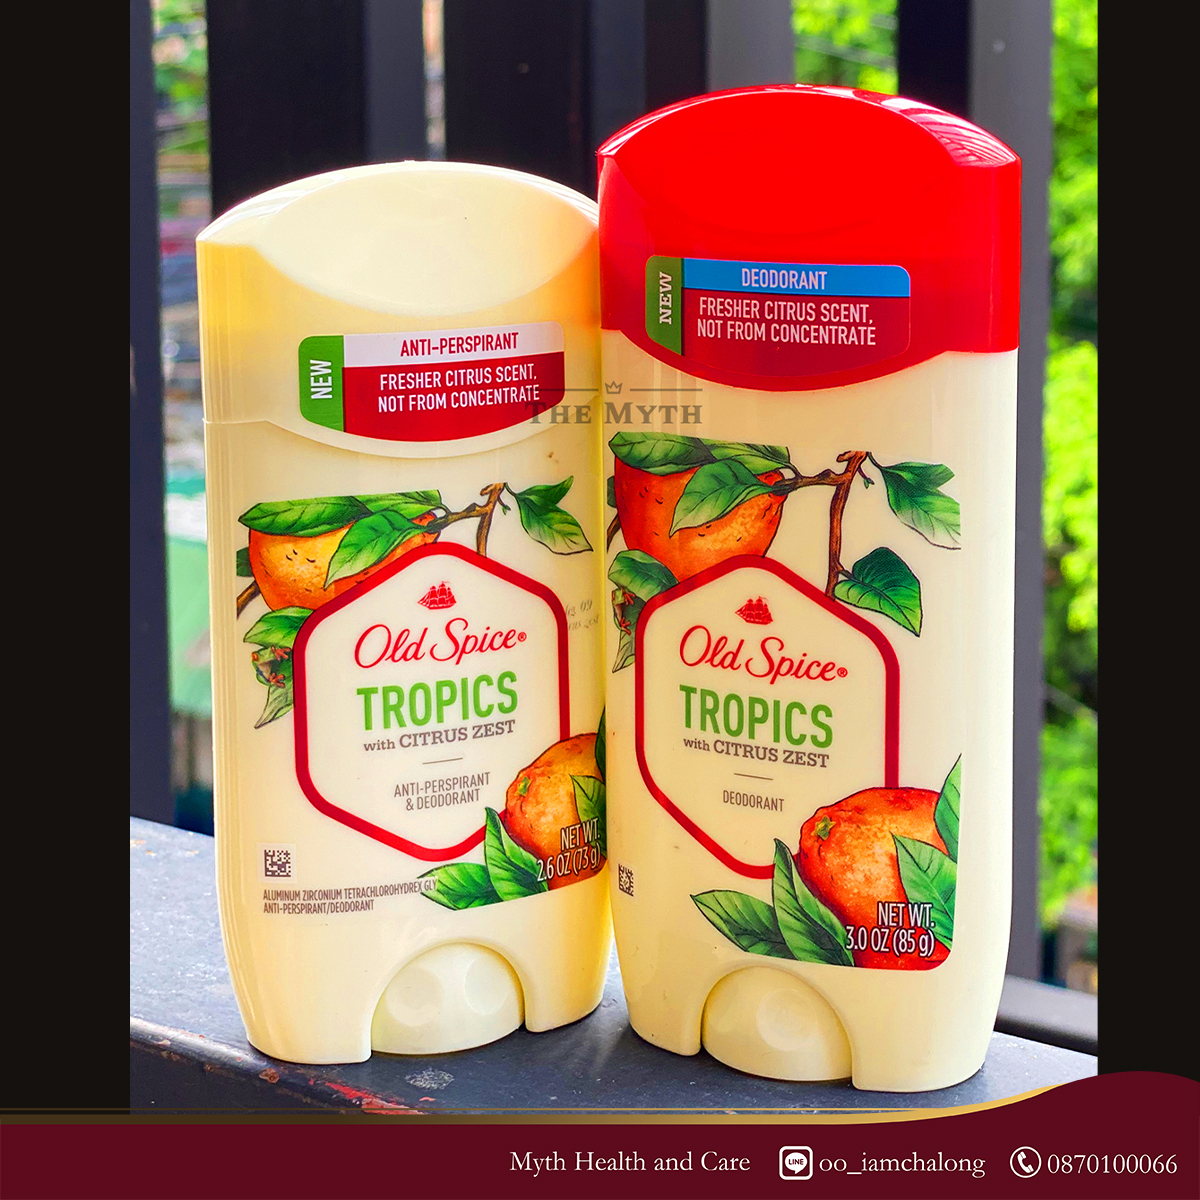 Old Spice Tropics Fresher Collection Unisex กลิ่นสดชื่นซาบซ่า ของเปลือกผลไม้เขตร้อน และเอกลักษณ์ของกลิ่นส้มและมะนาว ชวนให้ลอง